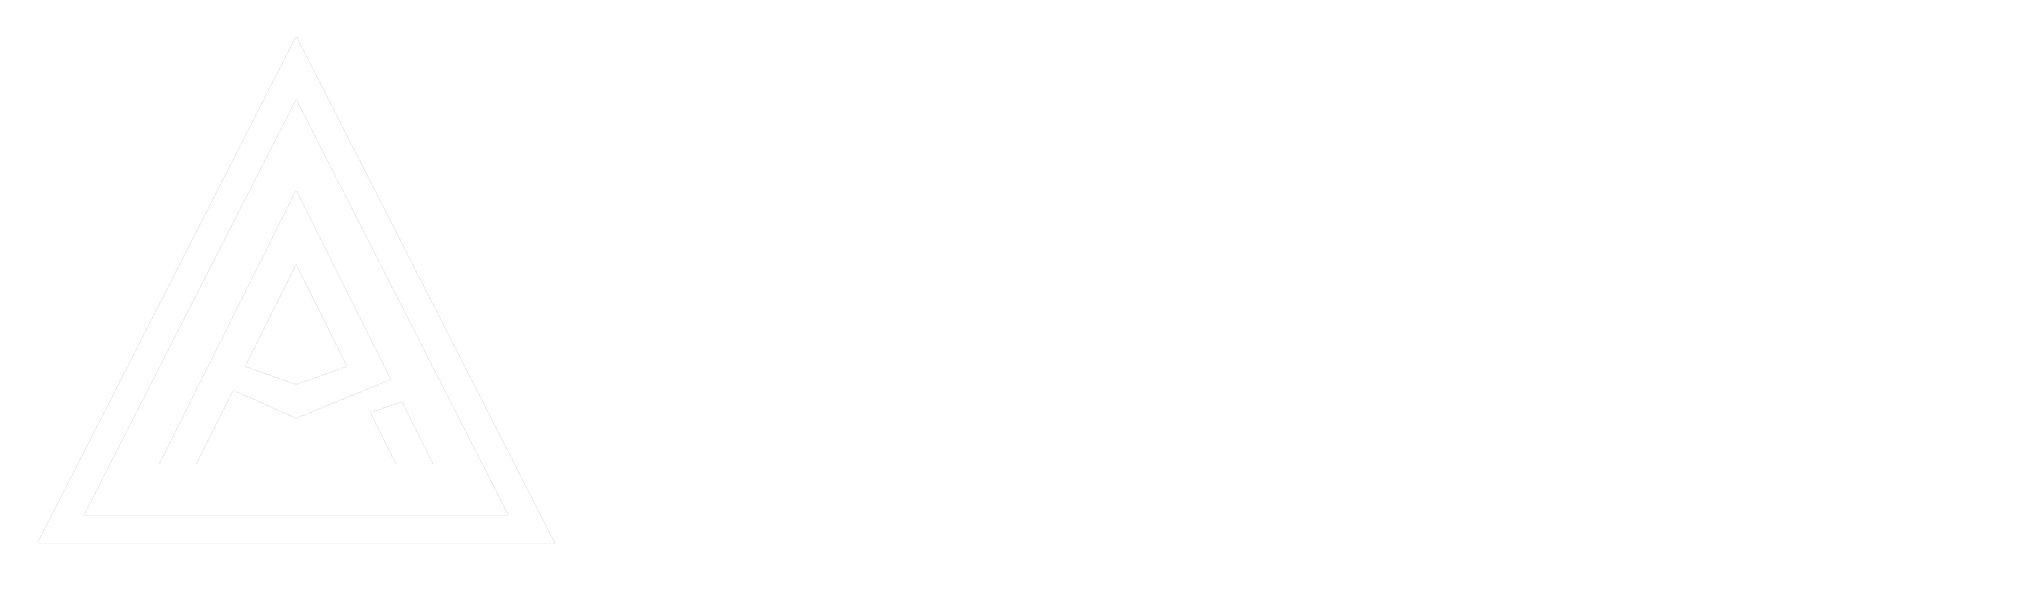 Alexander Morales